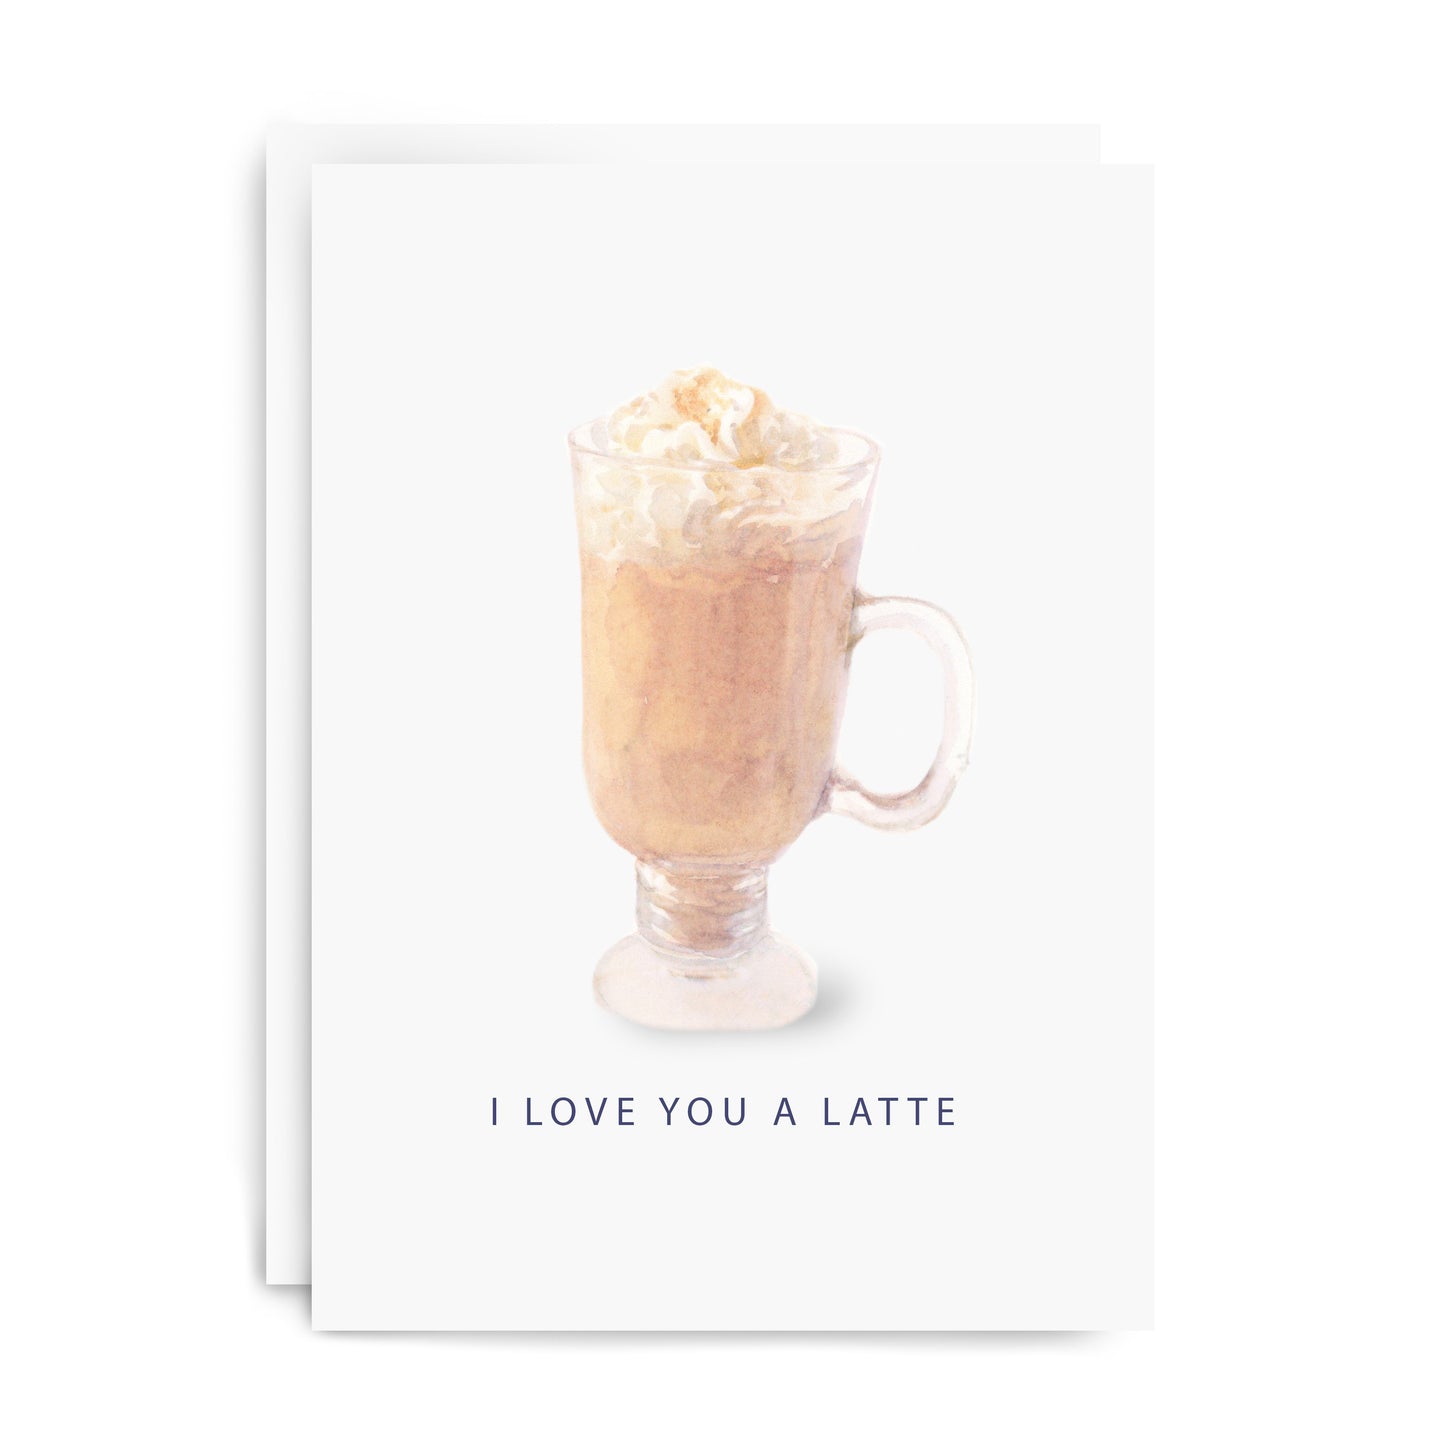 "Latte" Greeting Card